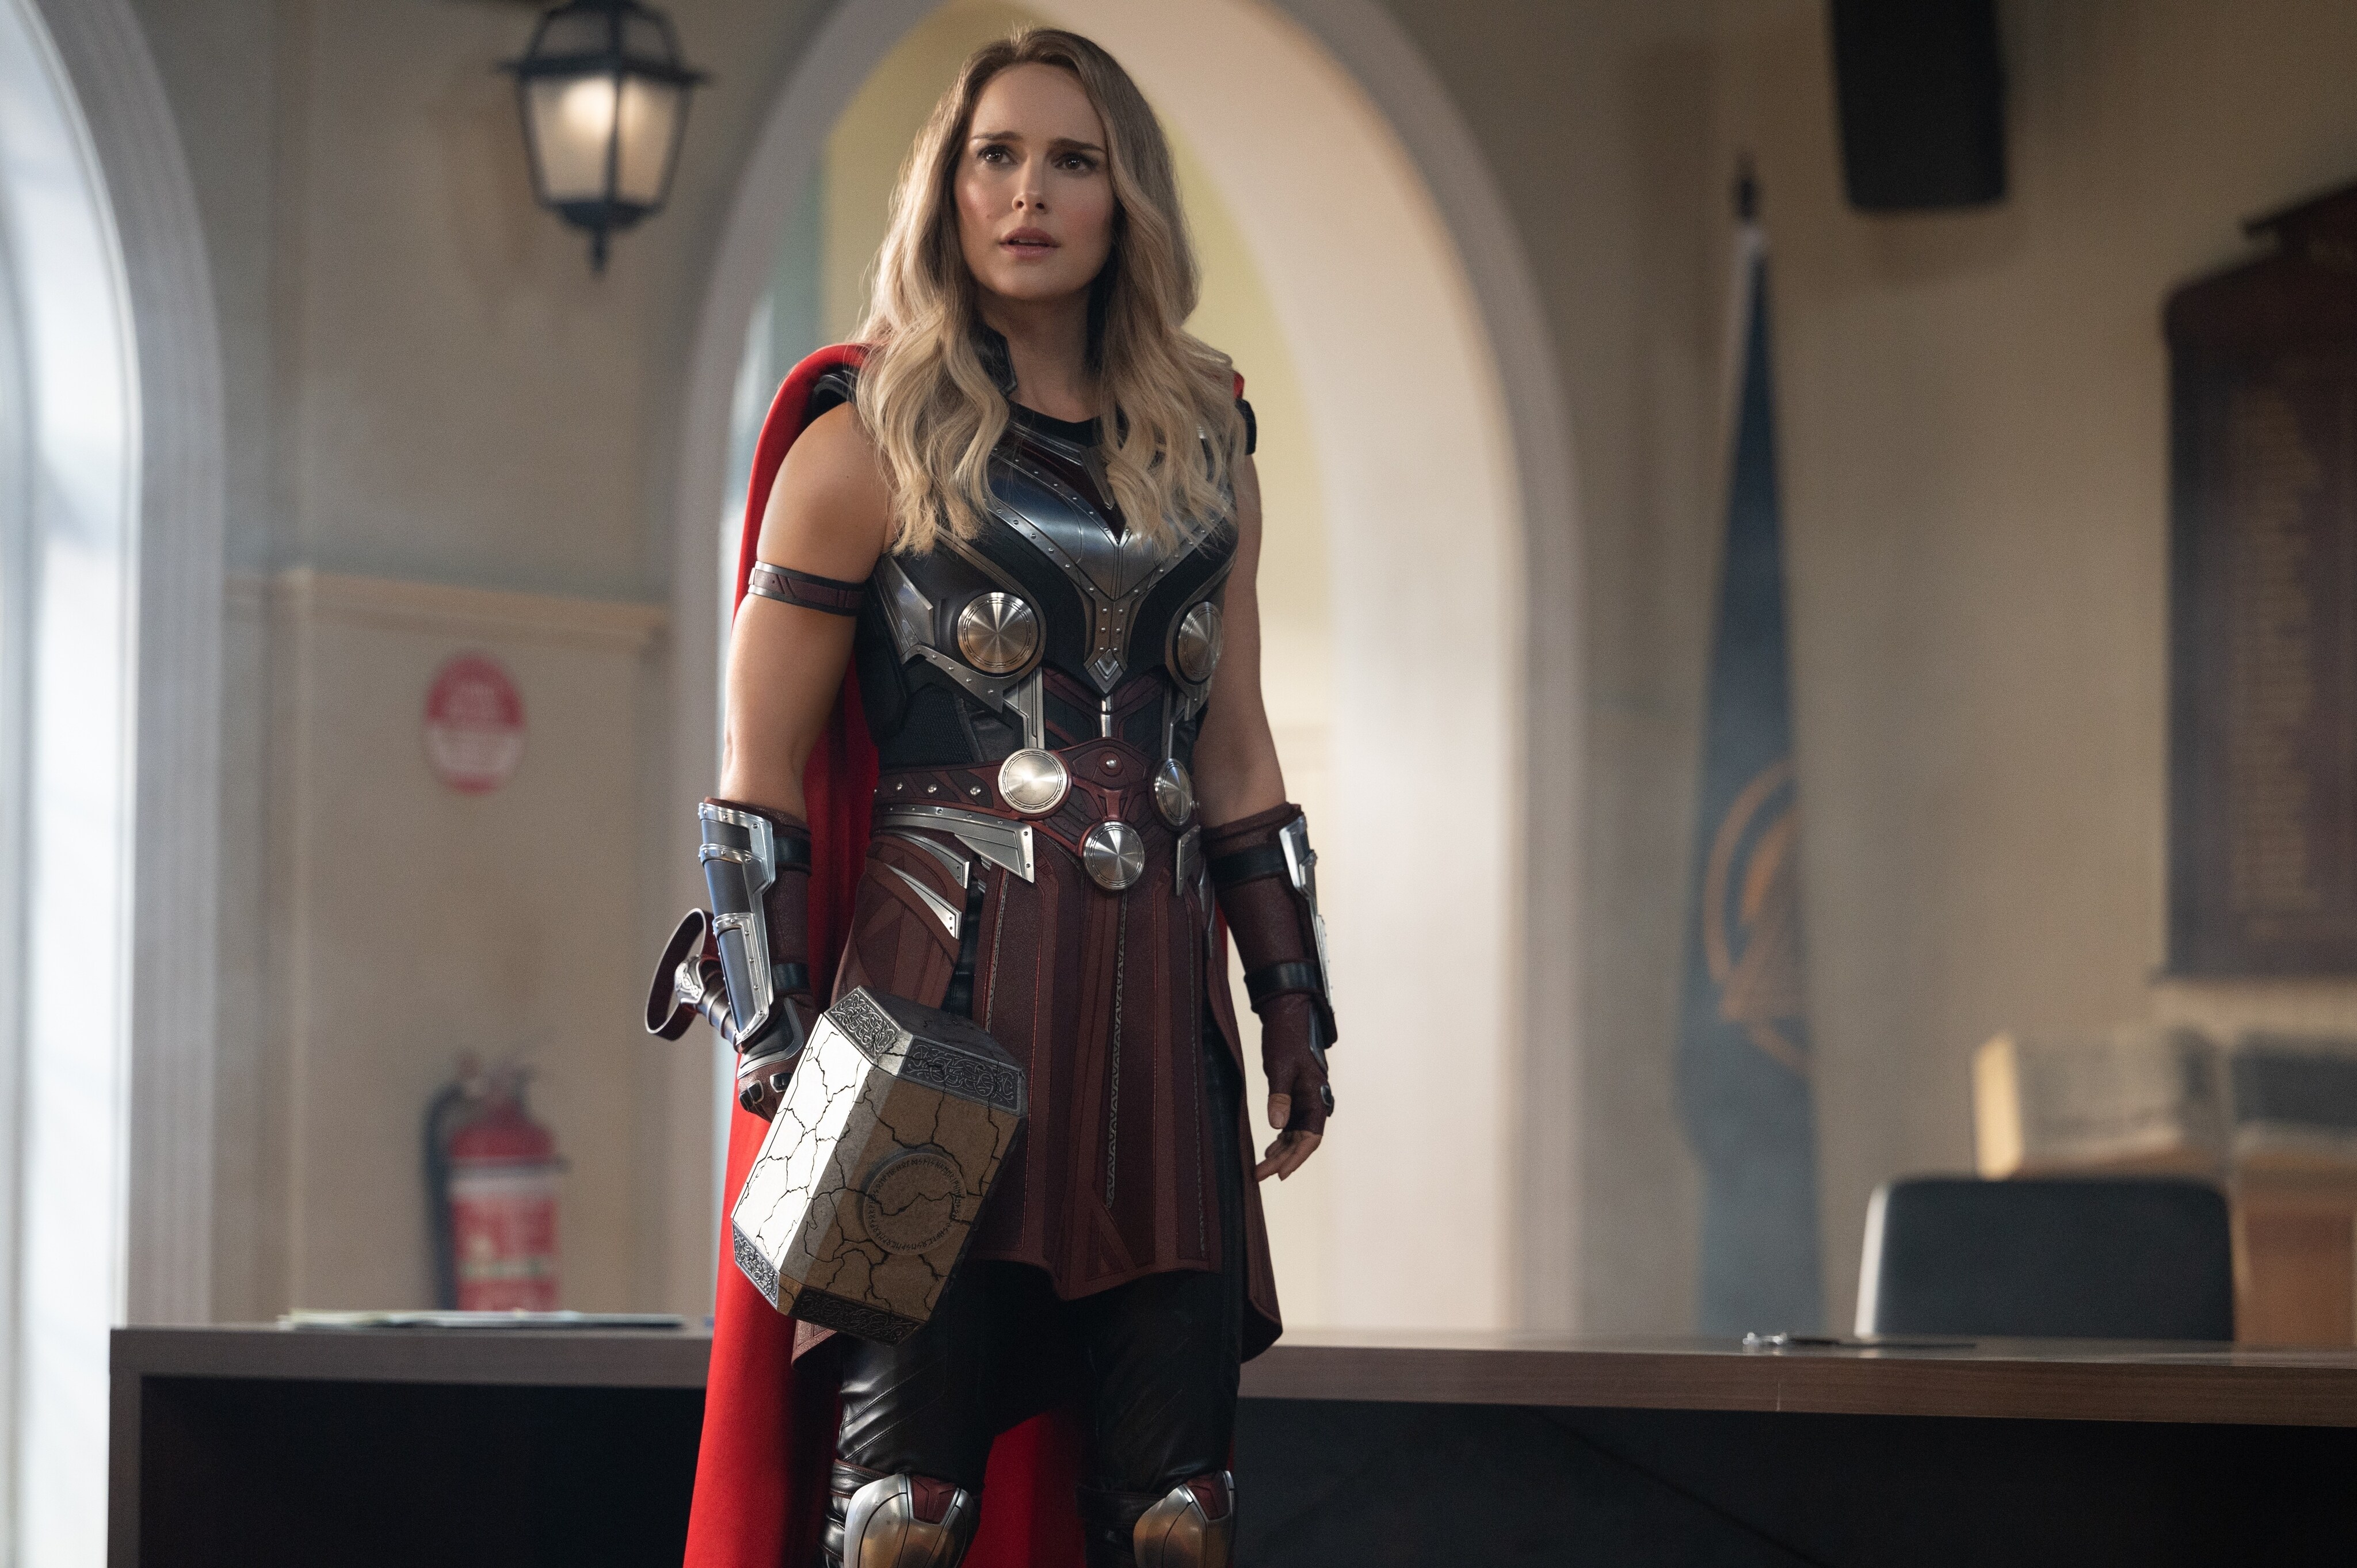 Thor - Amor e Trovão': tudo o que você precisa saber antes de ver